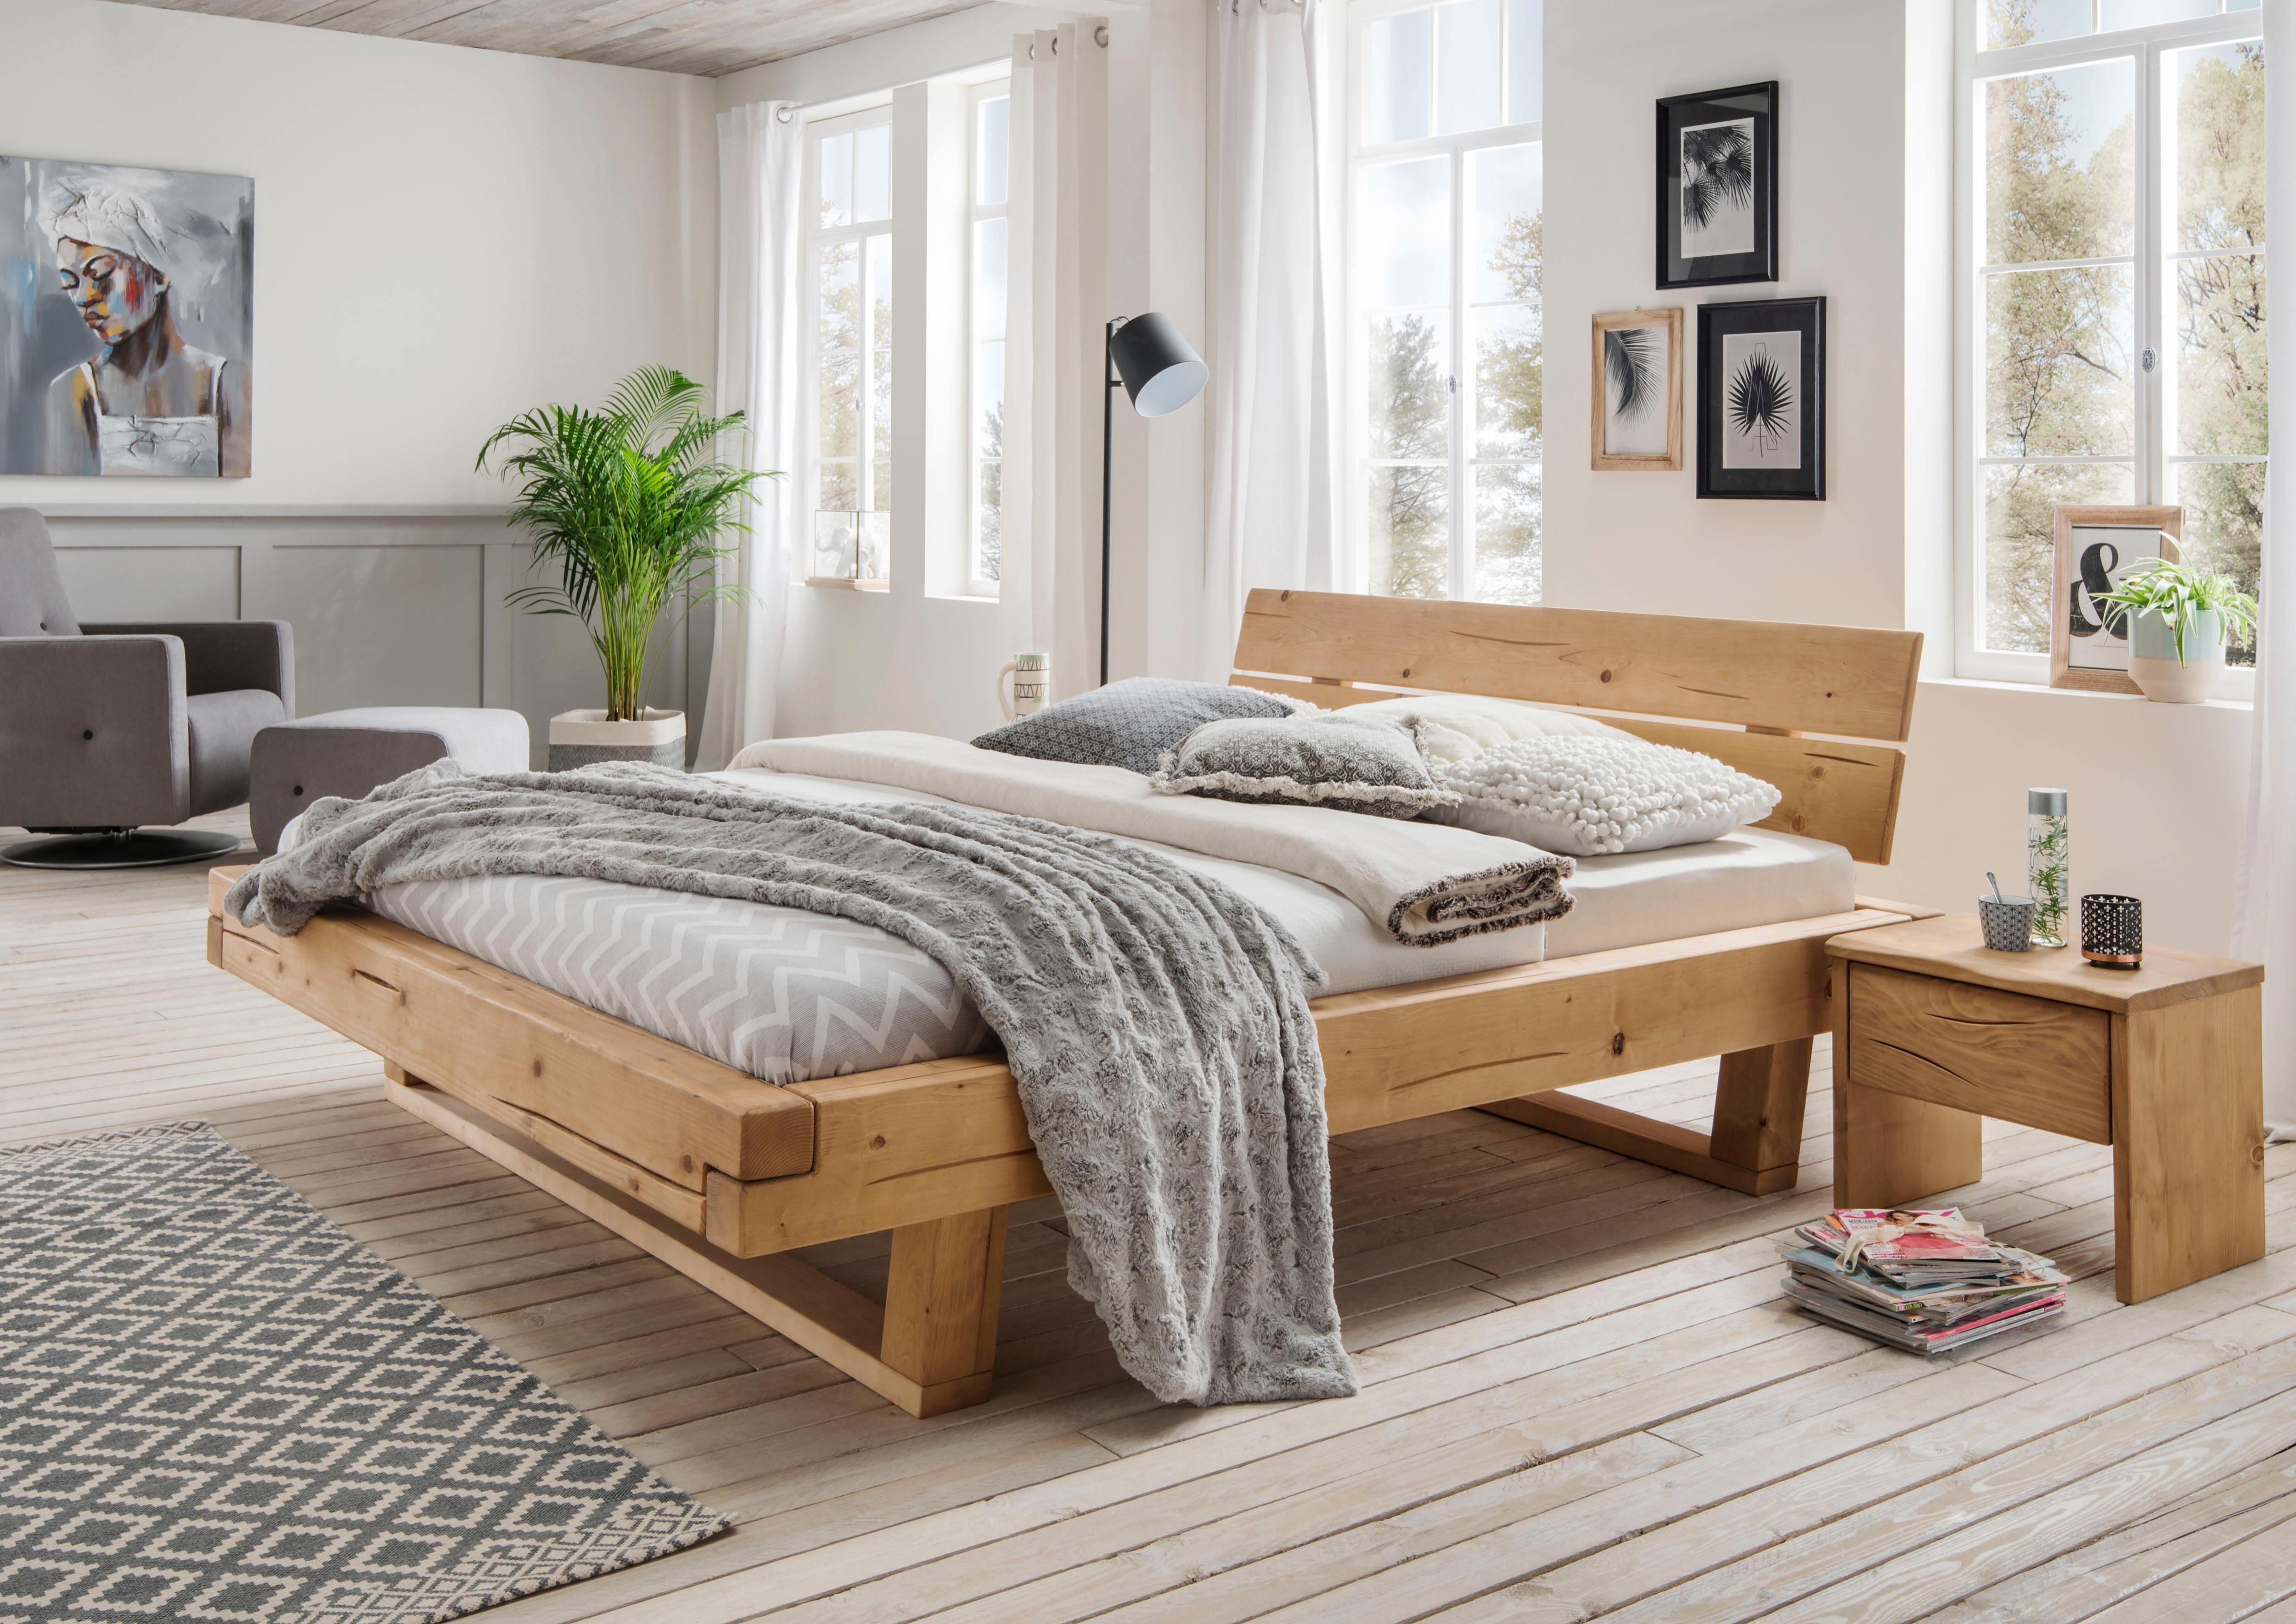 Premium collection by Home affaire Massief houten ledikant Ultima van massief hout in balk-look, in verschillende bedbreedten en houtkleuren